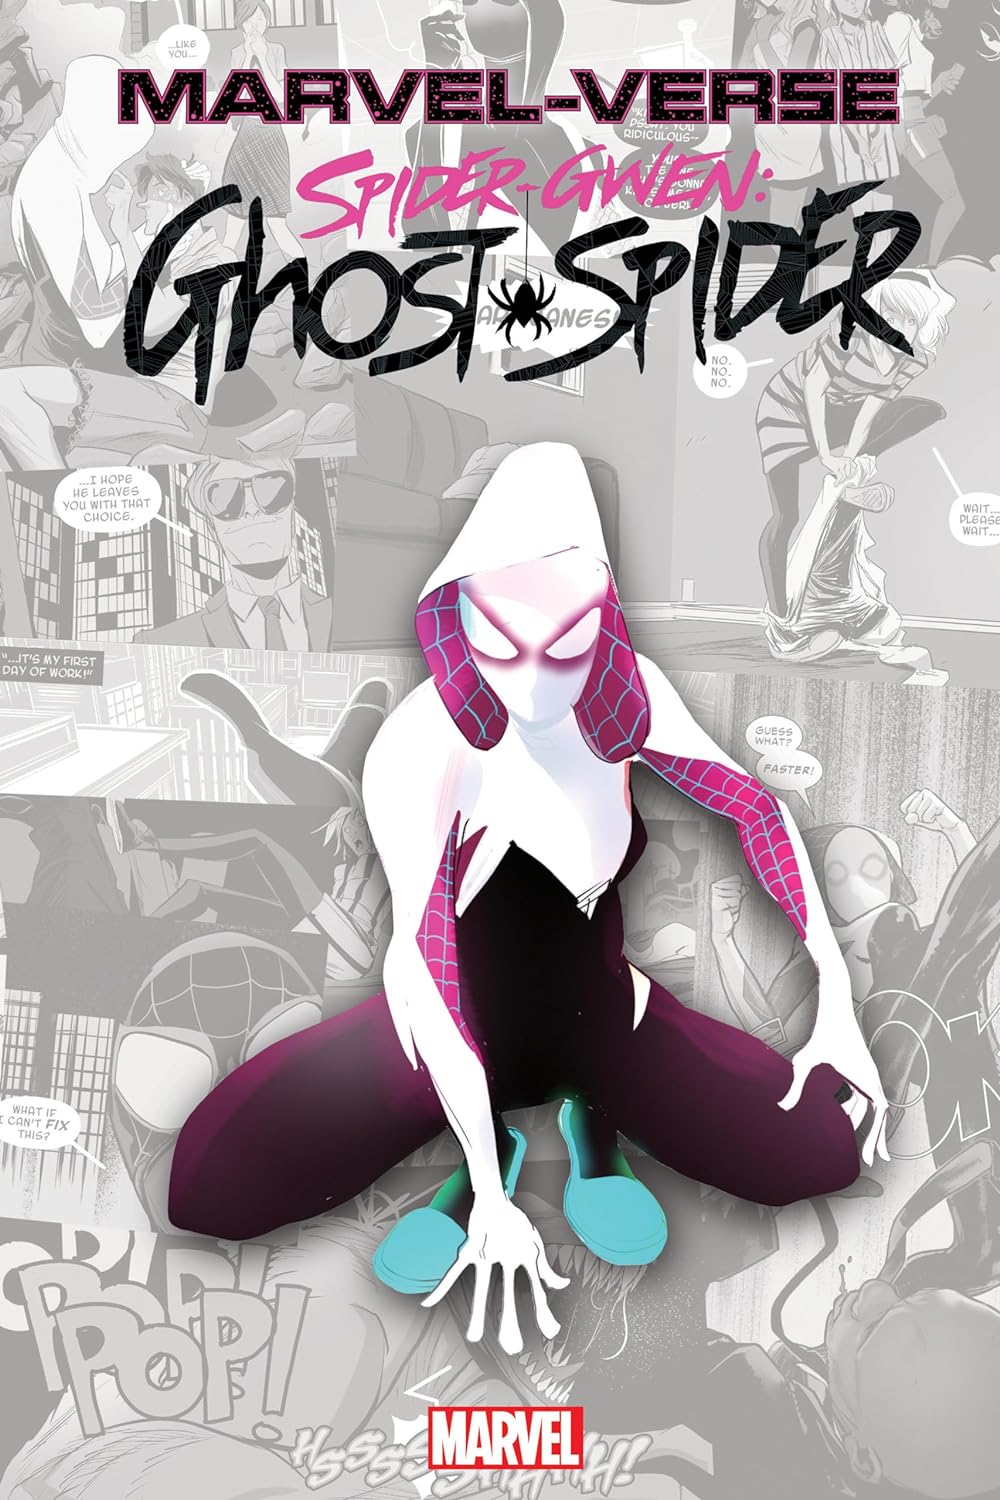 Marvel-verse: Spider-gwen - Ghost-spider | Jason Latour